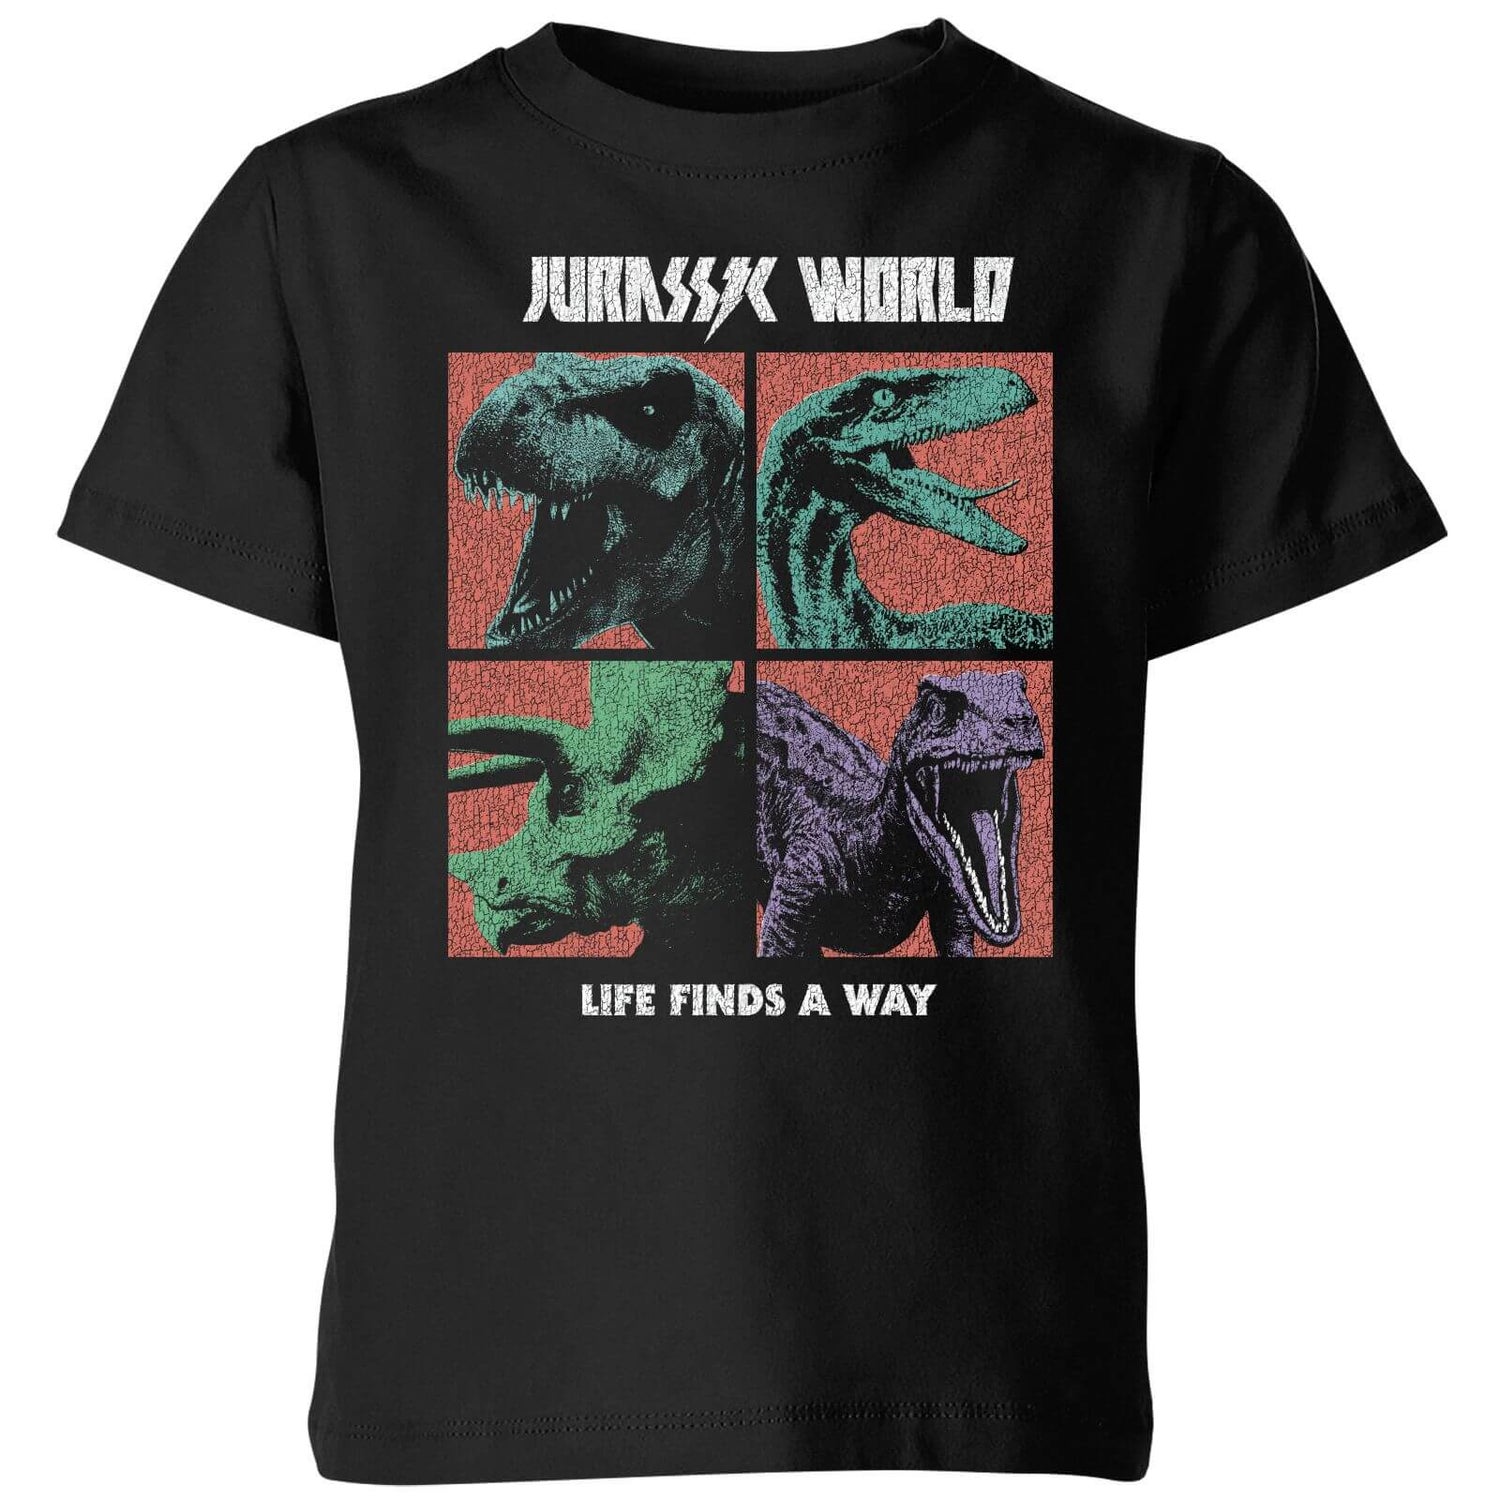 Jurassic Park World Four Colour Faces Kids' T-Shirt - Black